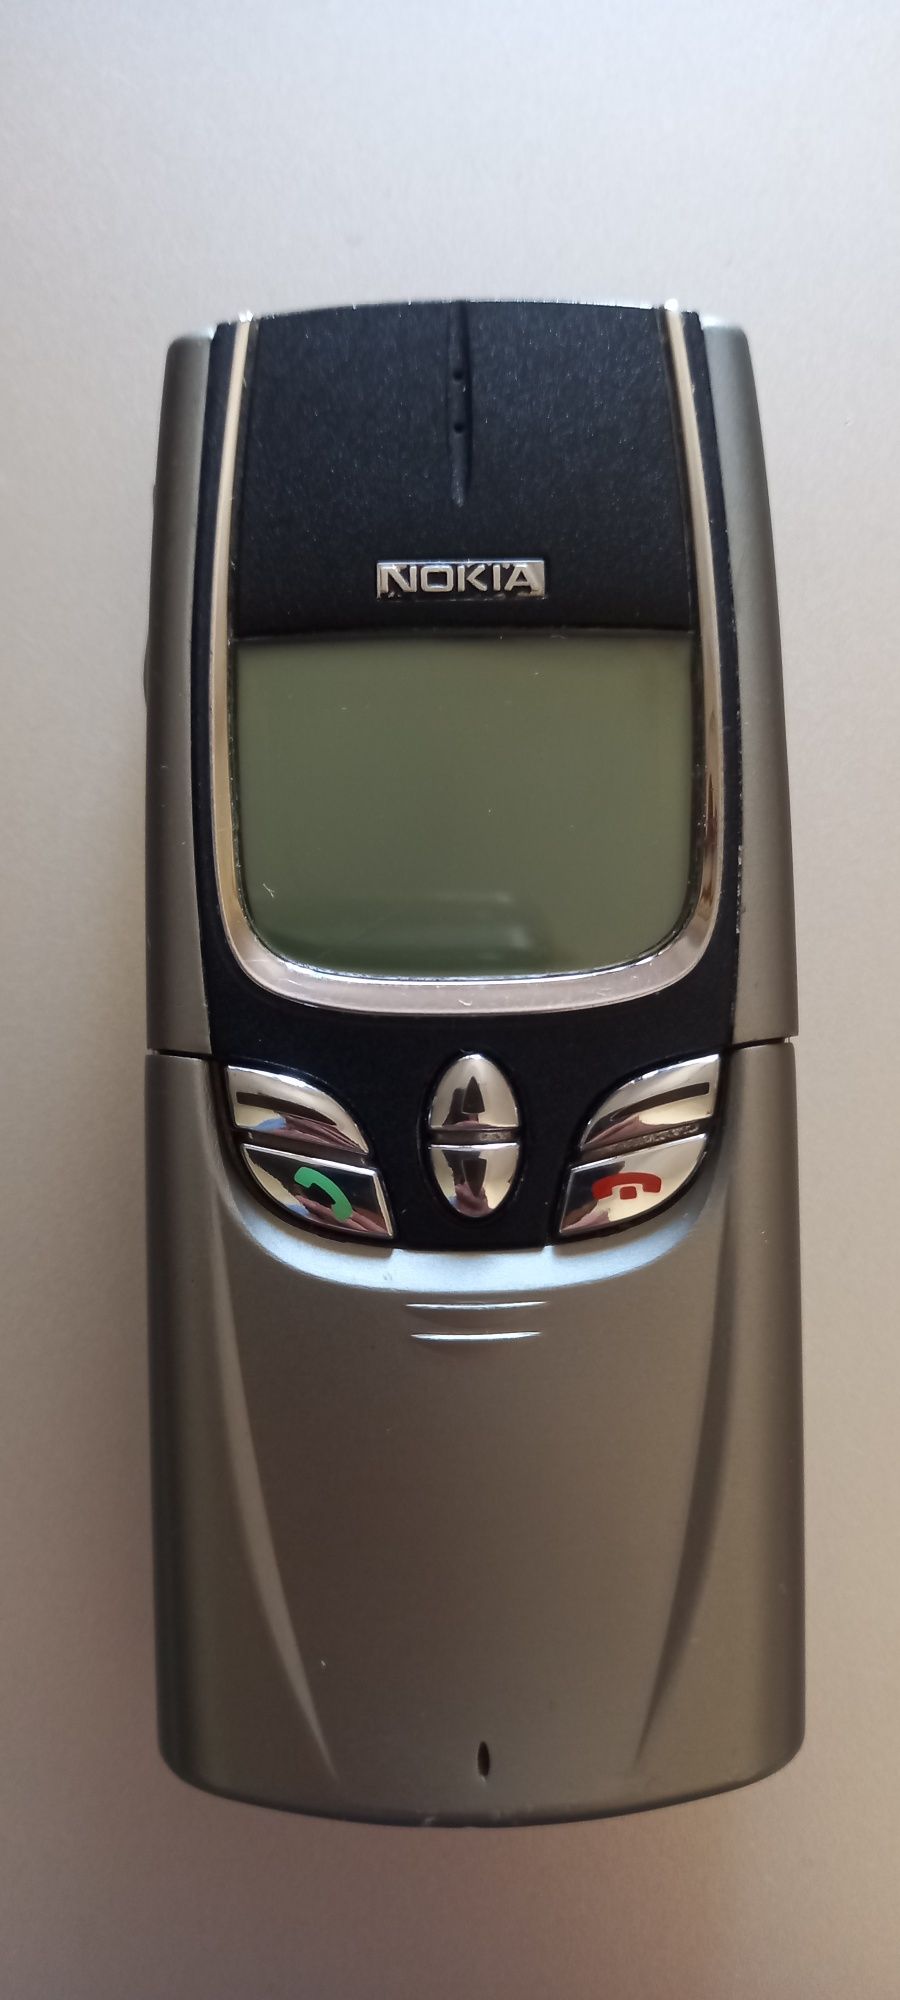 Telemóvel Nokia 8850